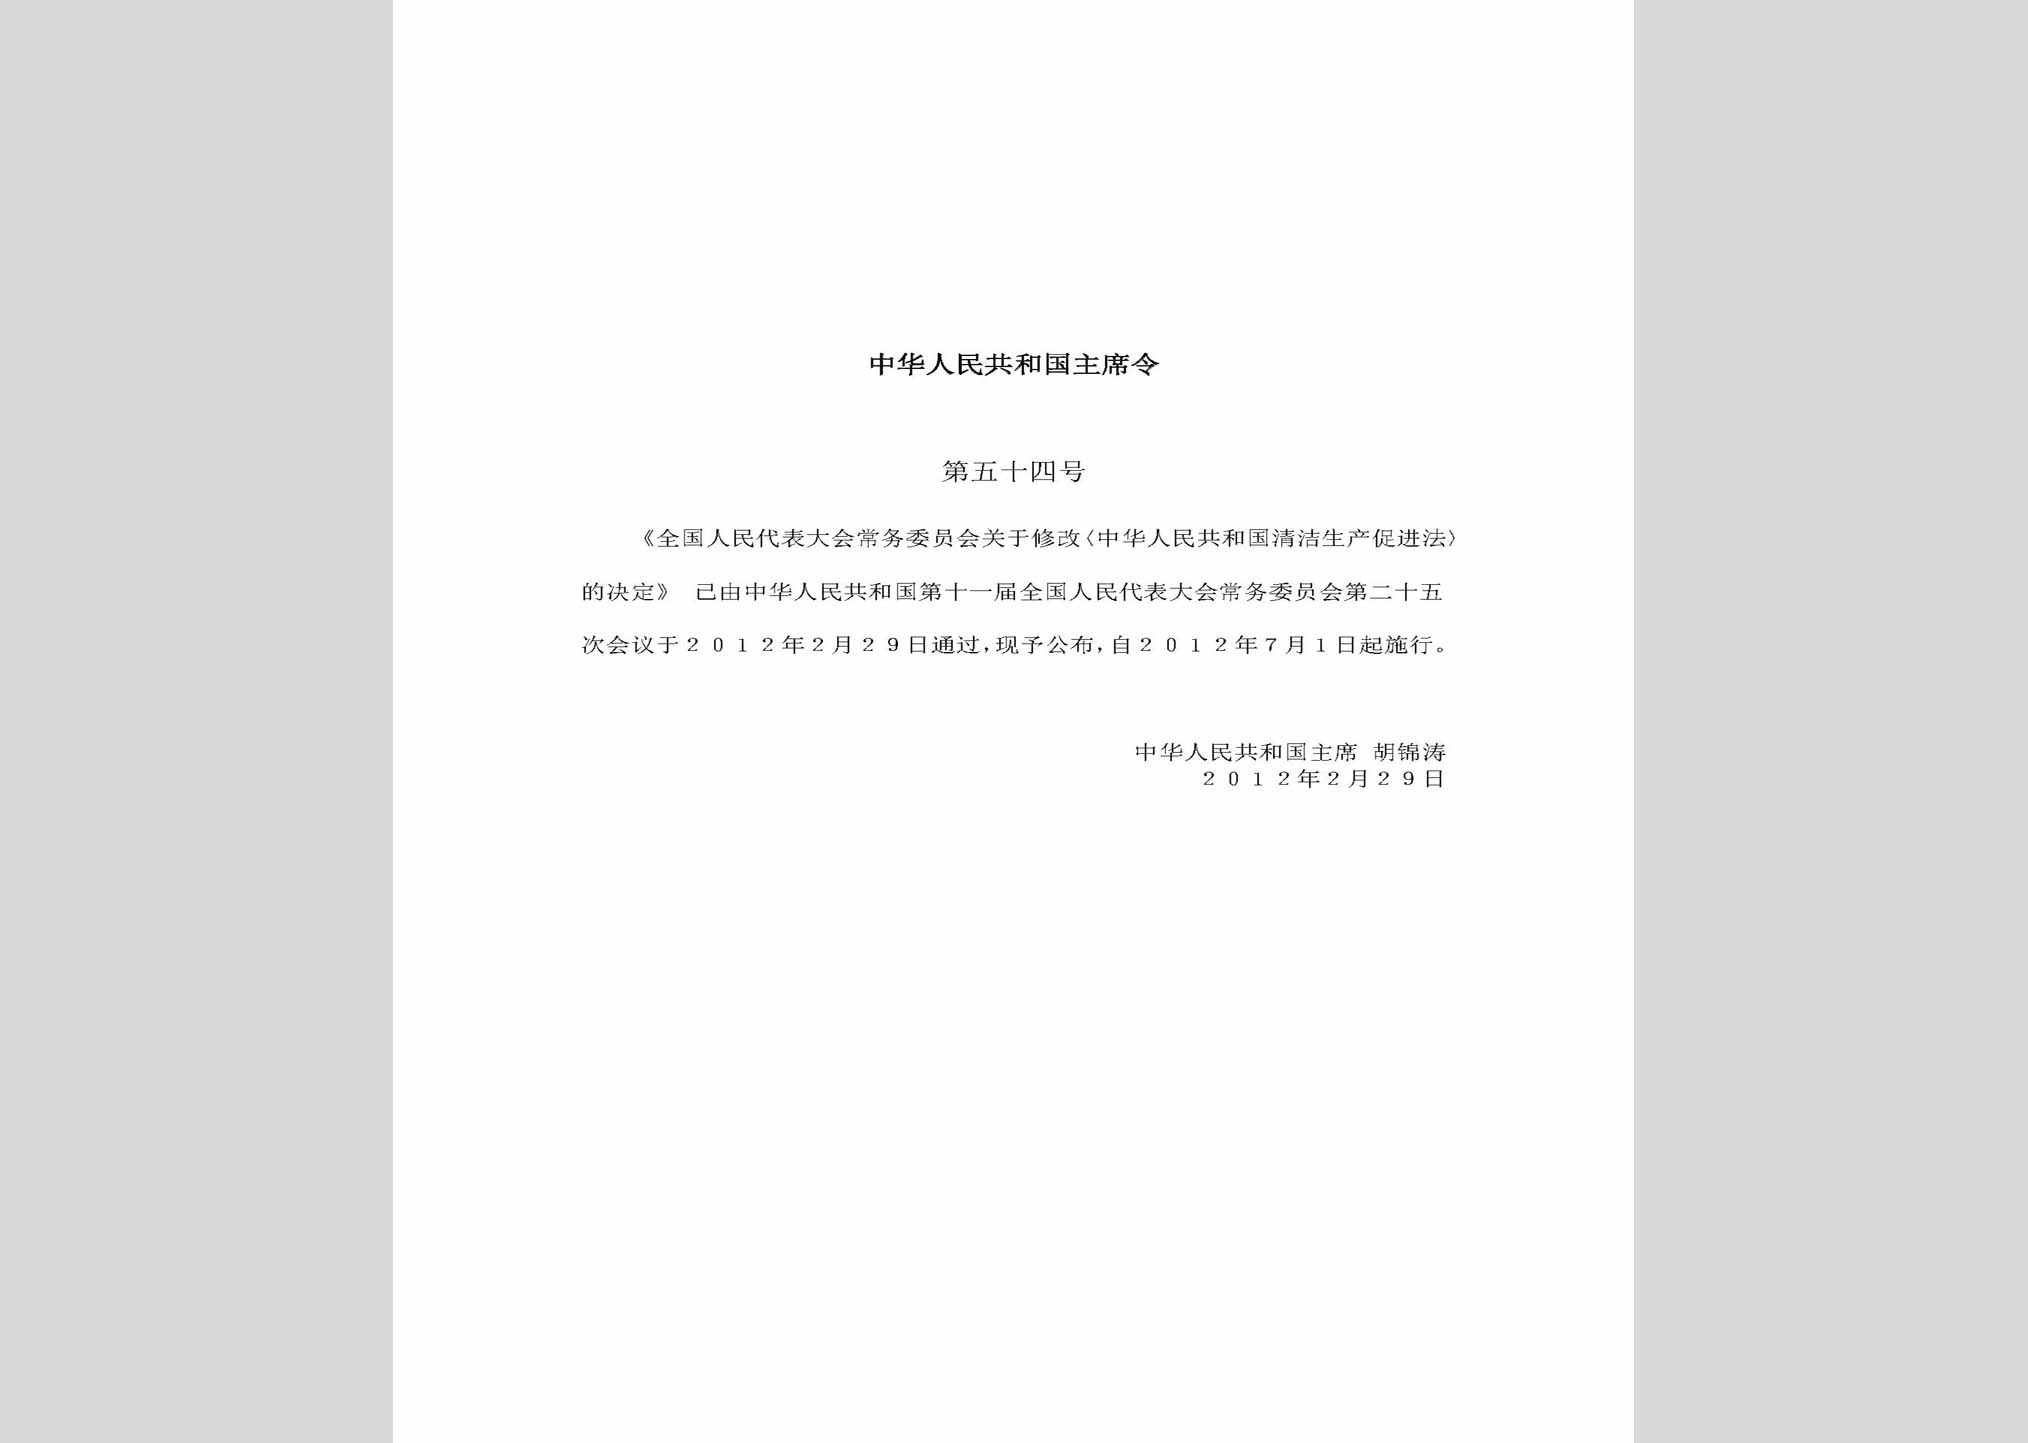 中华人民共和国主席令第五十四号：全国人民代表大会常务委员会关于修改《中华人民共和国清洁生产促进法》的决定